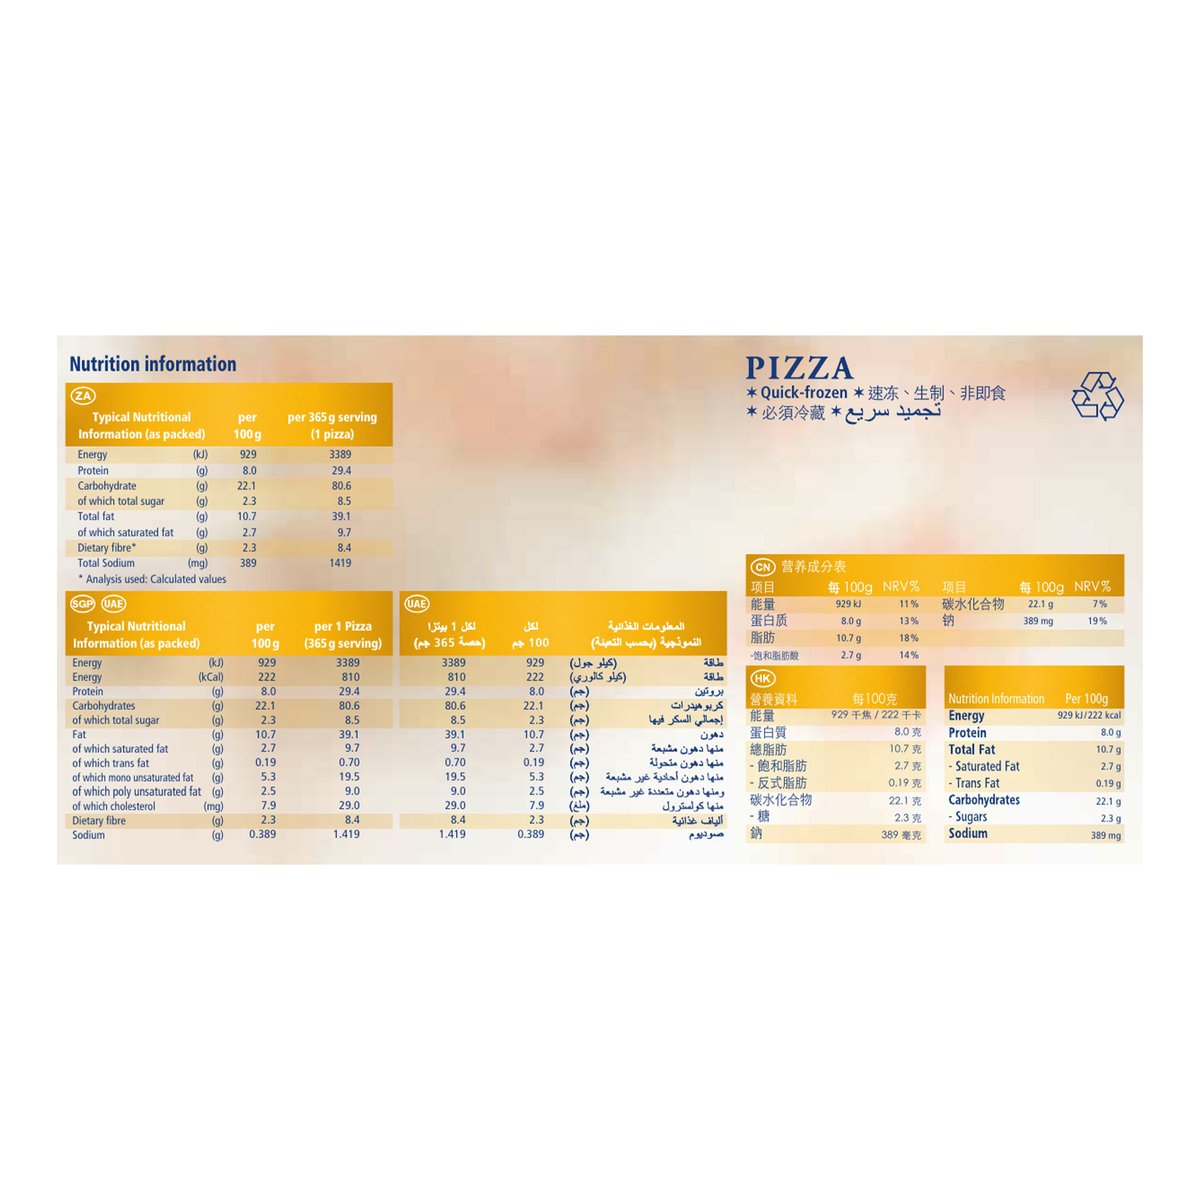 Dr.Oetker Ristorante Pizza Funghi 365 g